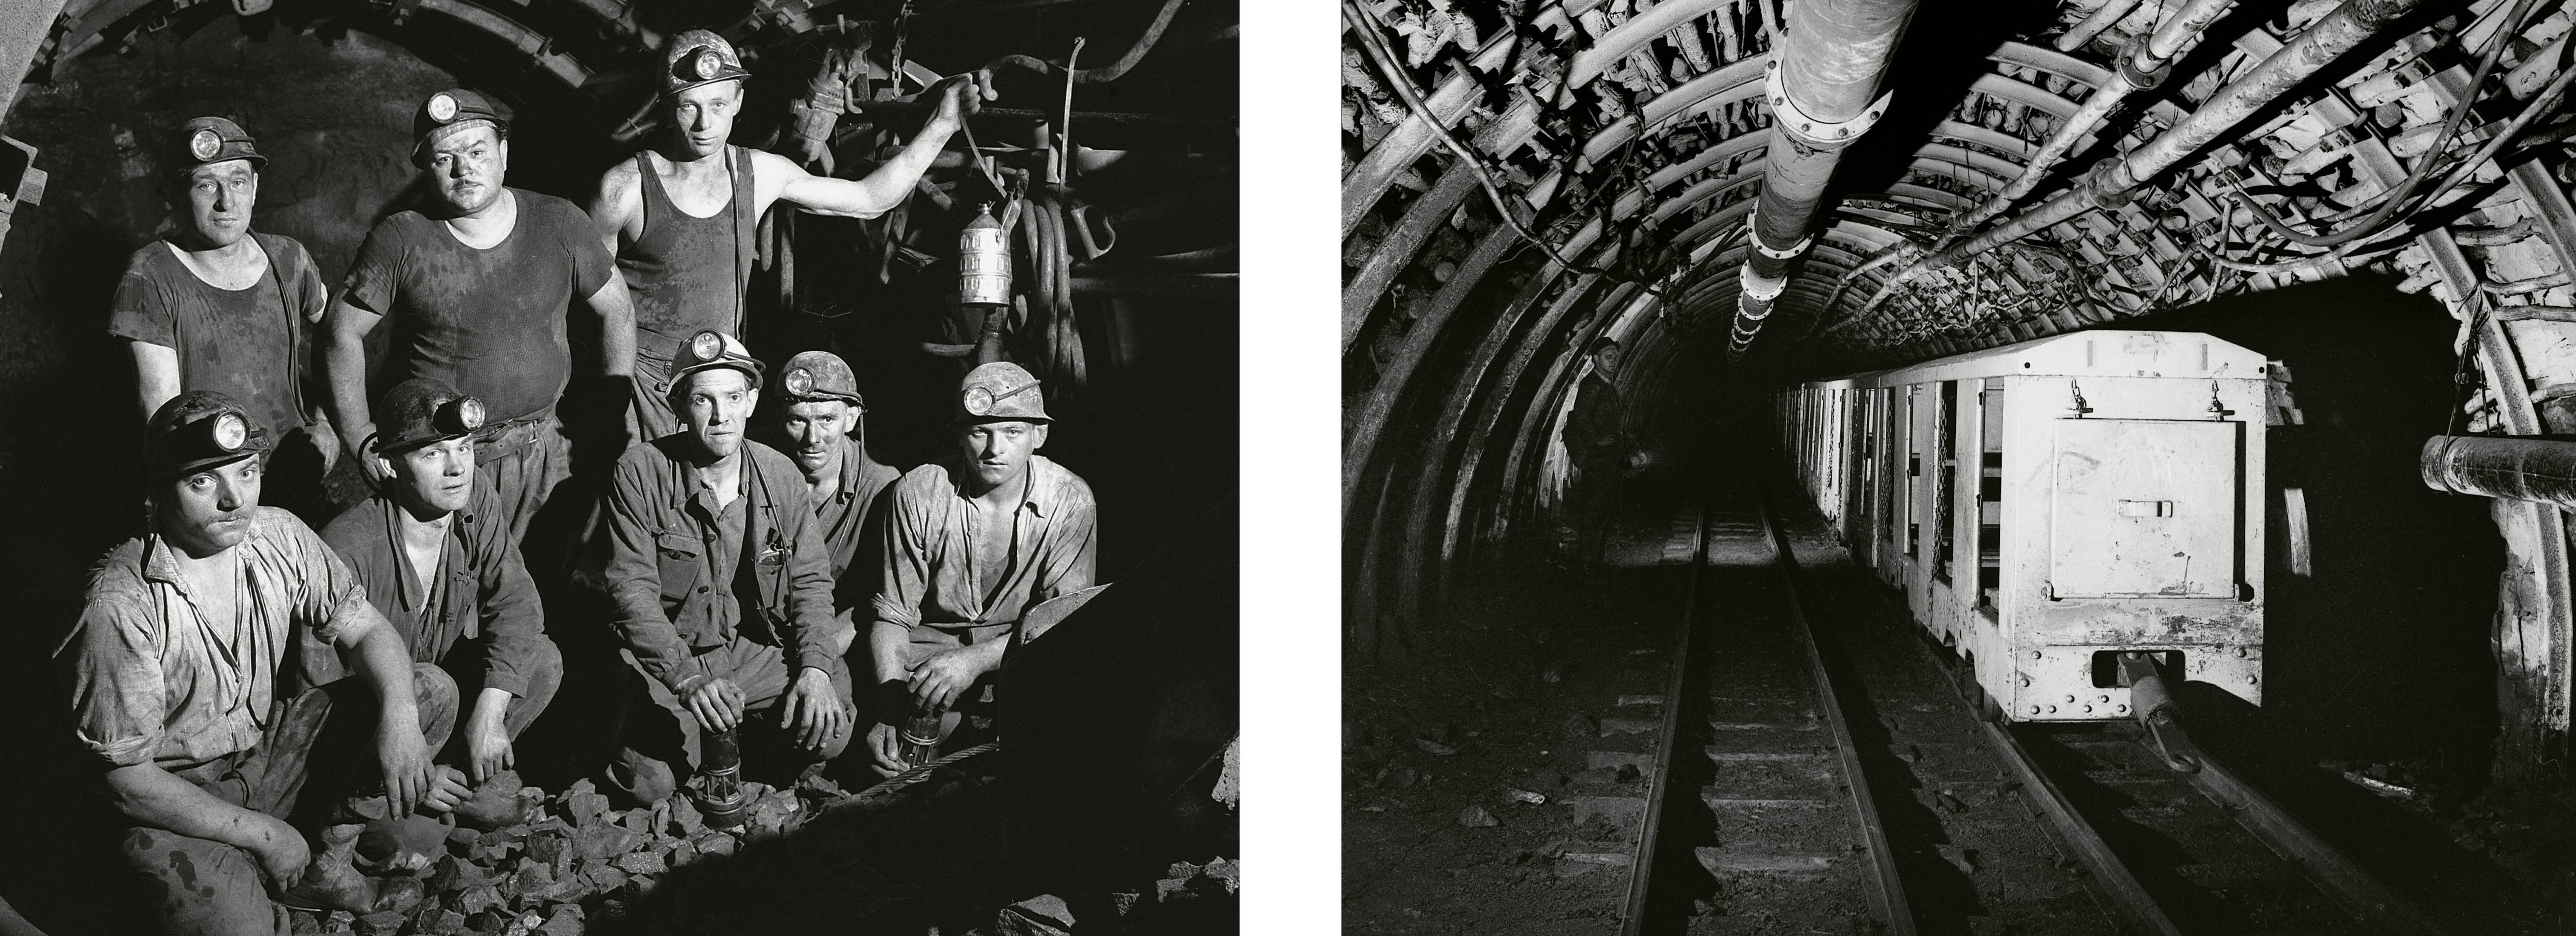 Mineurs du fond de Lens, deuxième moitié du XXe siècle